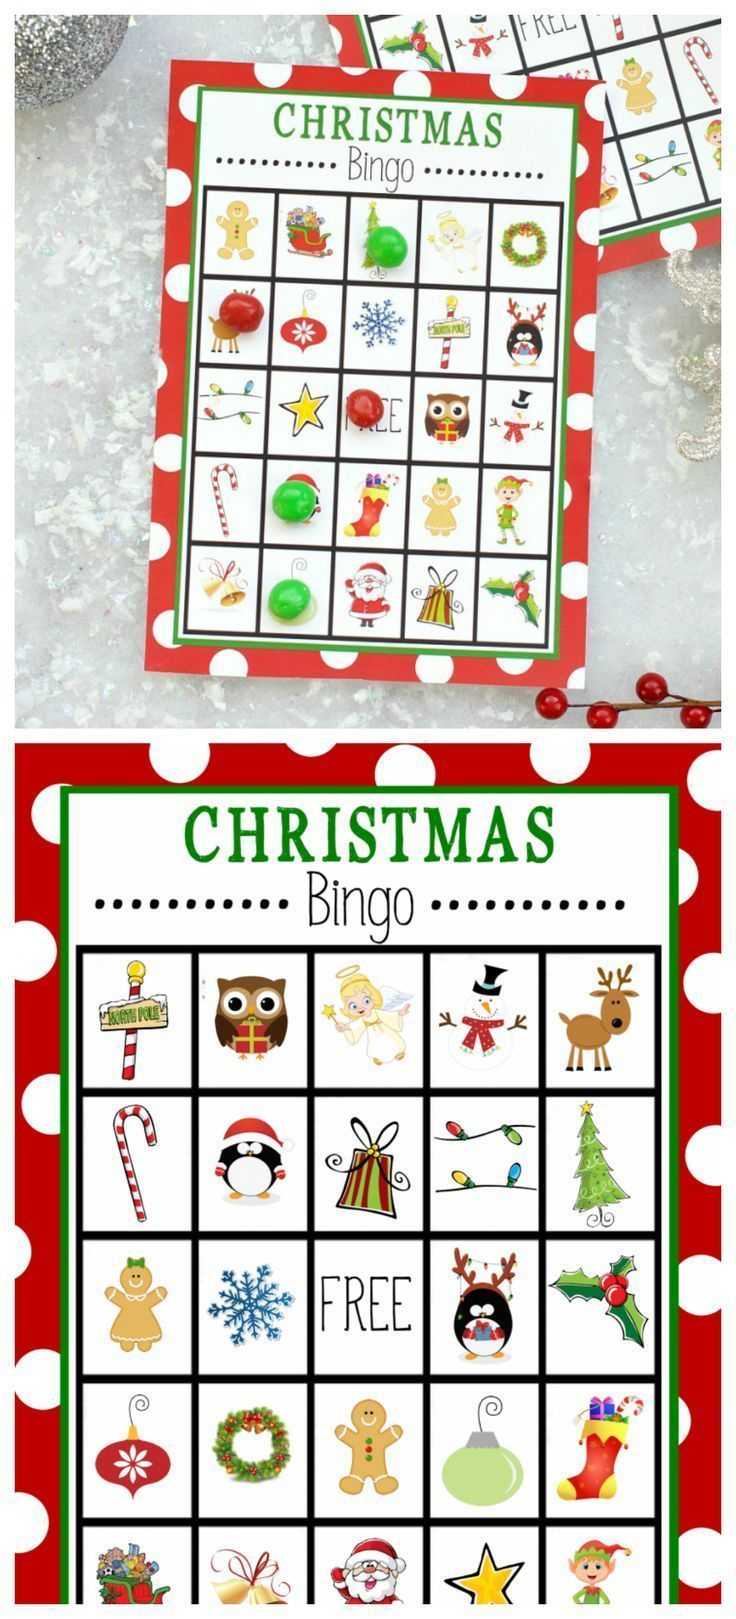 Free Printable Bingo Game For Kids For Christmas bingo 